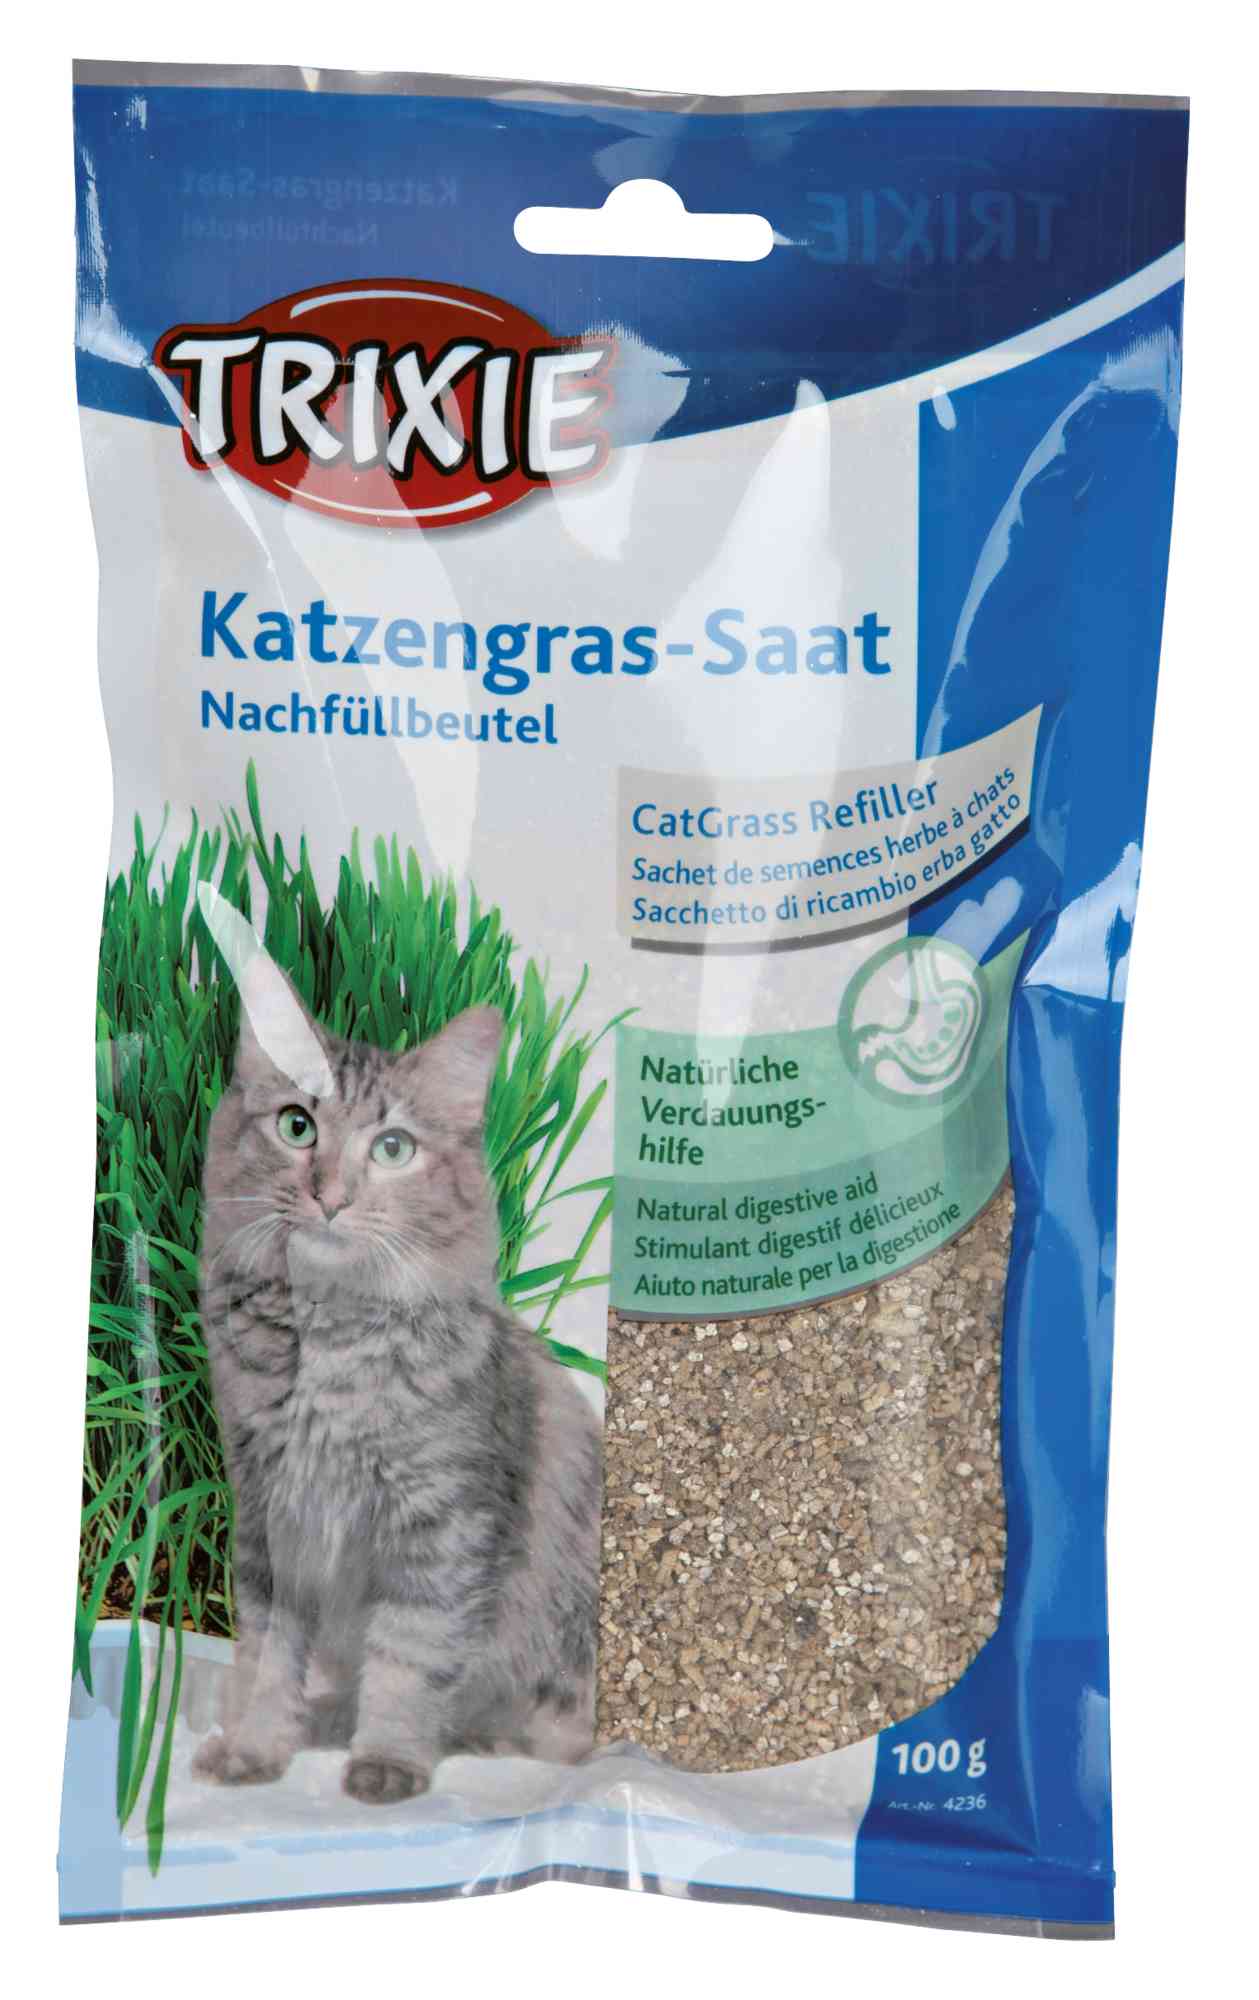 SALE – 8x Katzengras Saat Nachfüllbeutel für #4235, Beutel/ca. 100 g